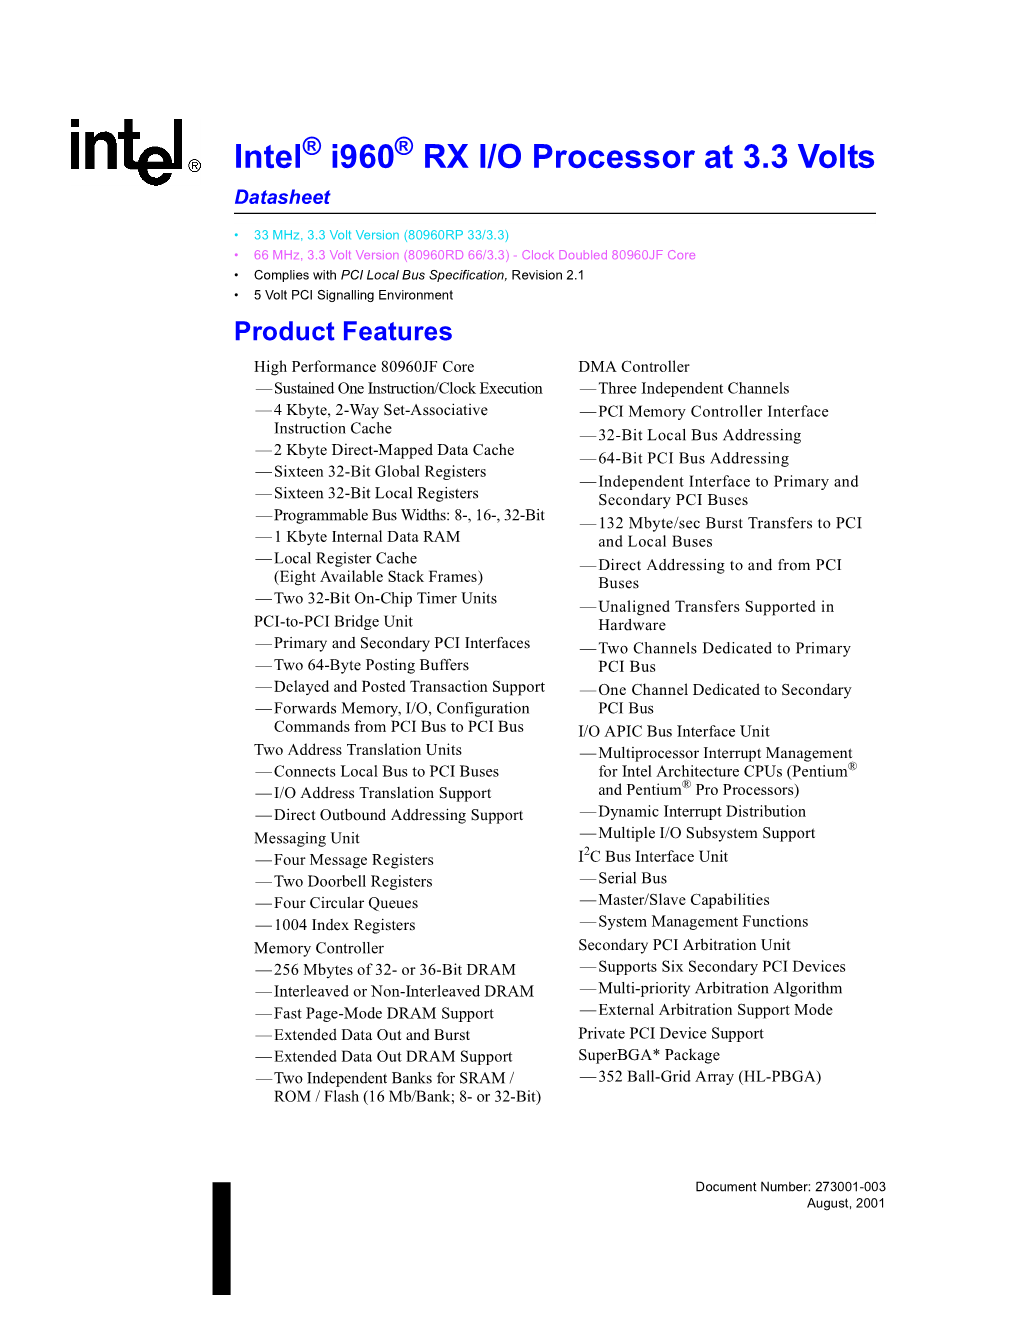 Intel I960 RX I/O Processor at 3.3 Volts